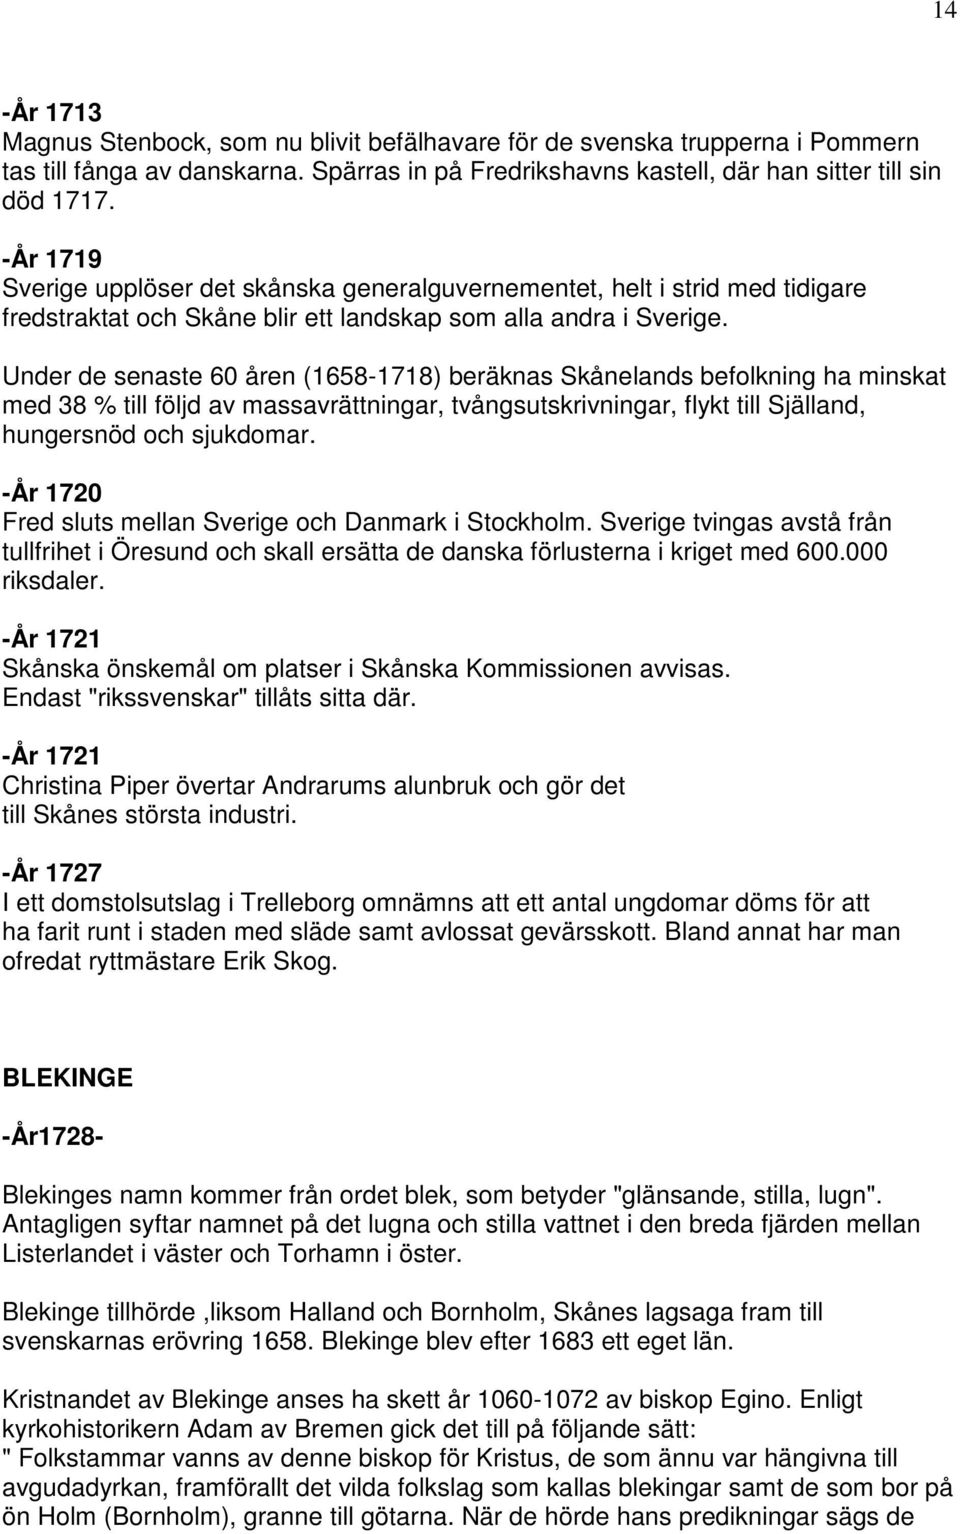 Under de senaste 60 åren (1658-1718) beräknas Skånelands befolkning ha minskat med 38 % till följd av massavrättningar, tvångsutskrivningar, flykt till Själland, hungersnöd och sjukdomar.